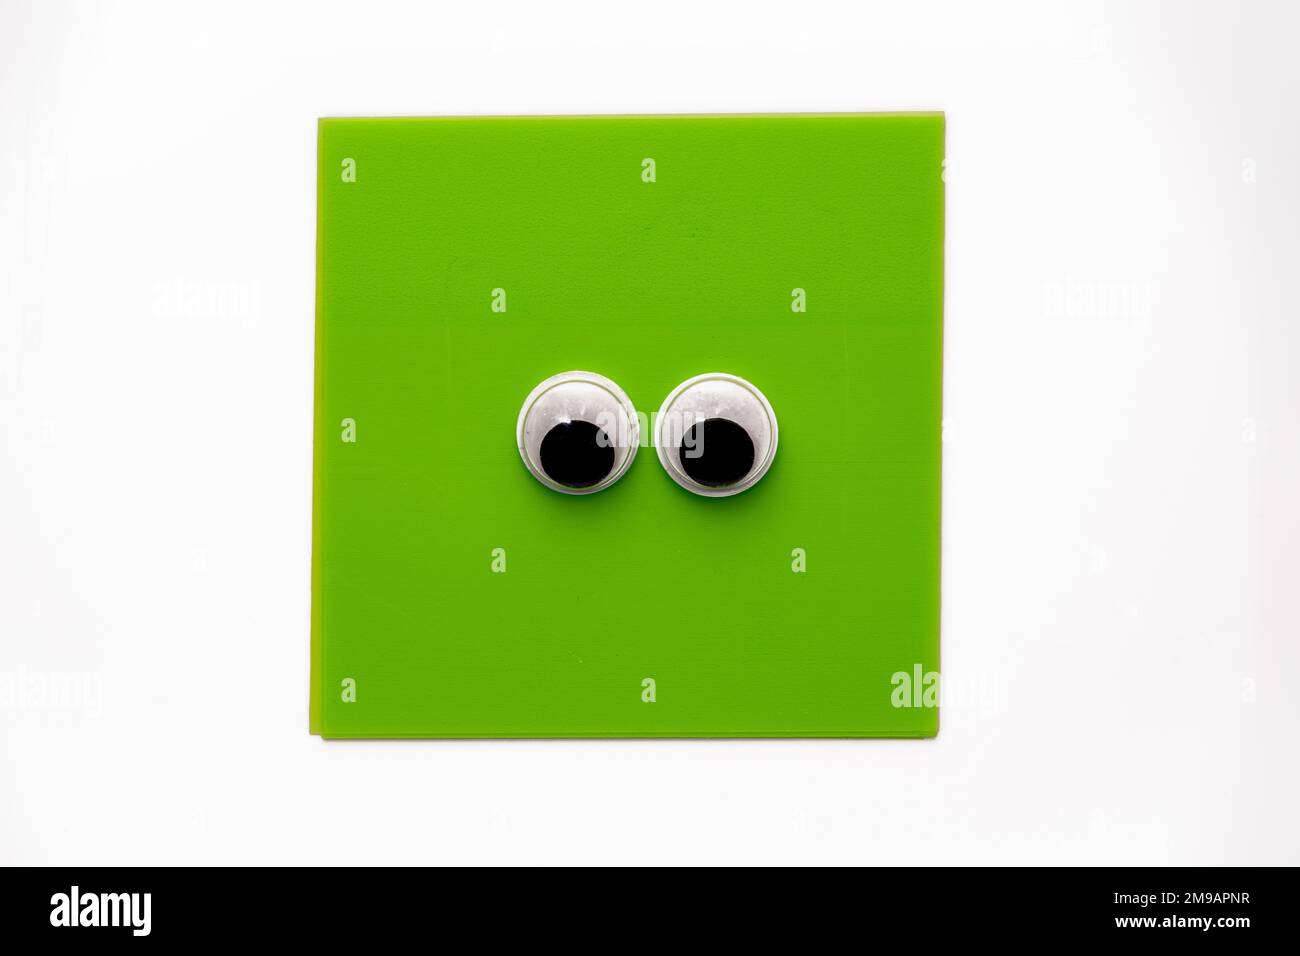 Paire de jolis yeux sur un bloc-notes carré vert isolé sur un fond blanc Banque D'Images